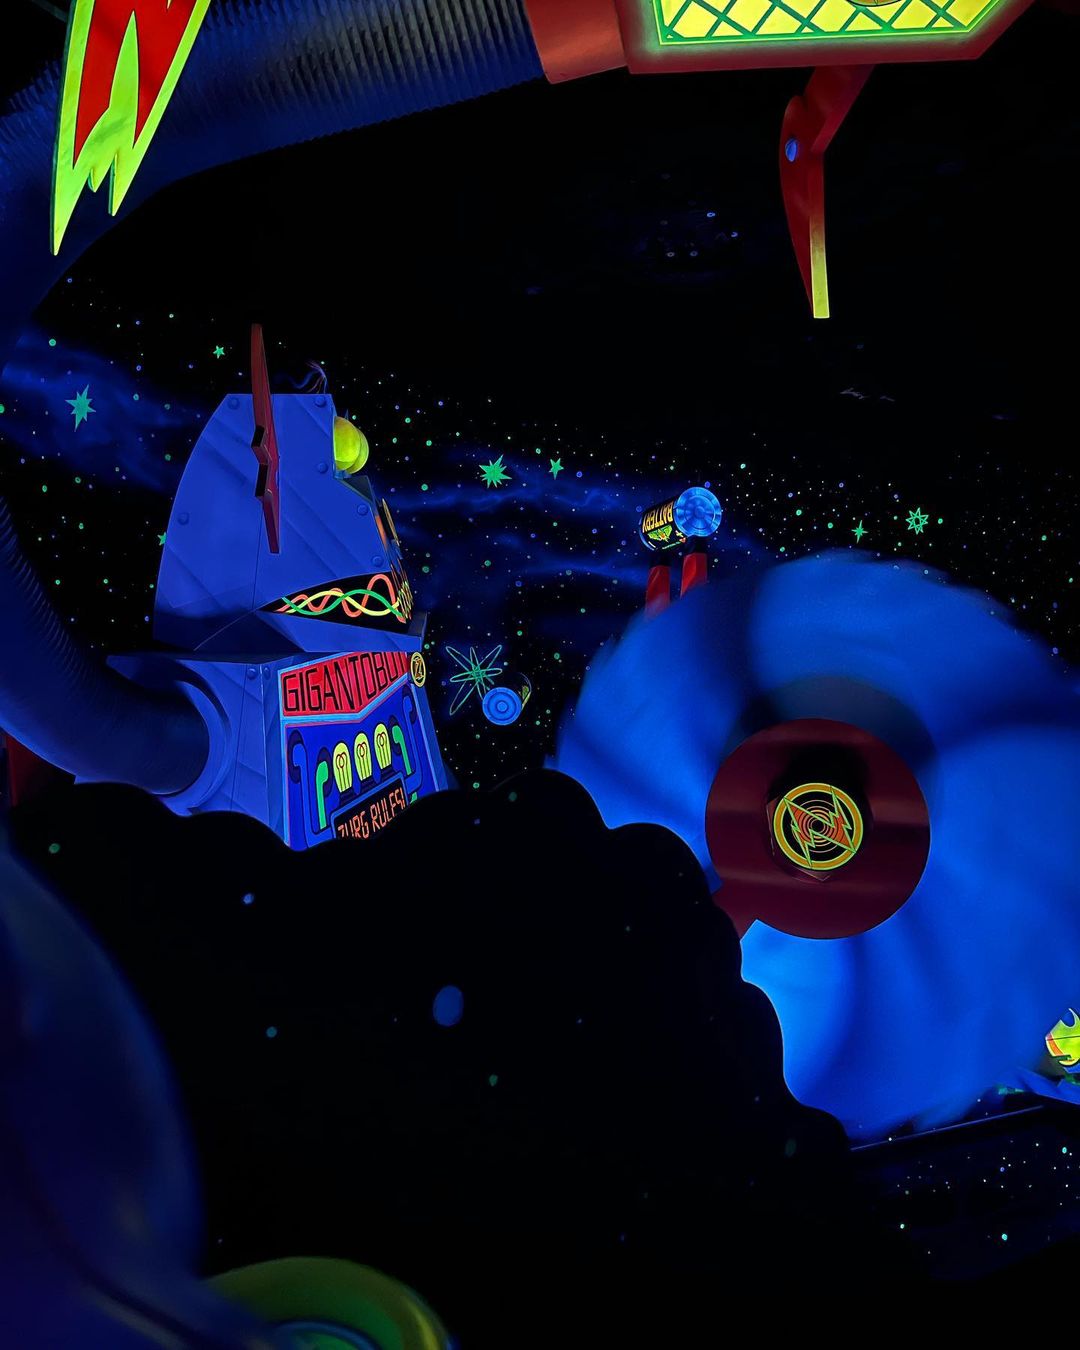 Buzz Lightyear’s Space Ranger Spin - Atração do Toy Story no Magic Kingdom